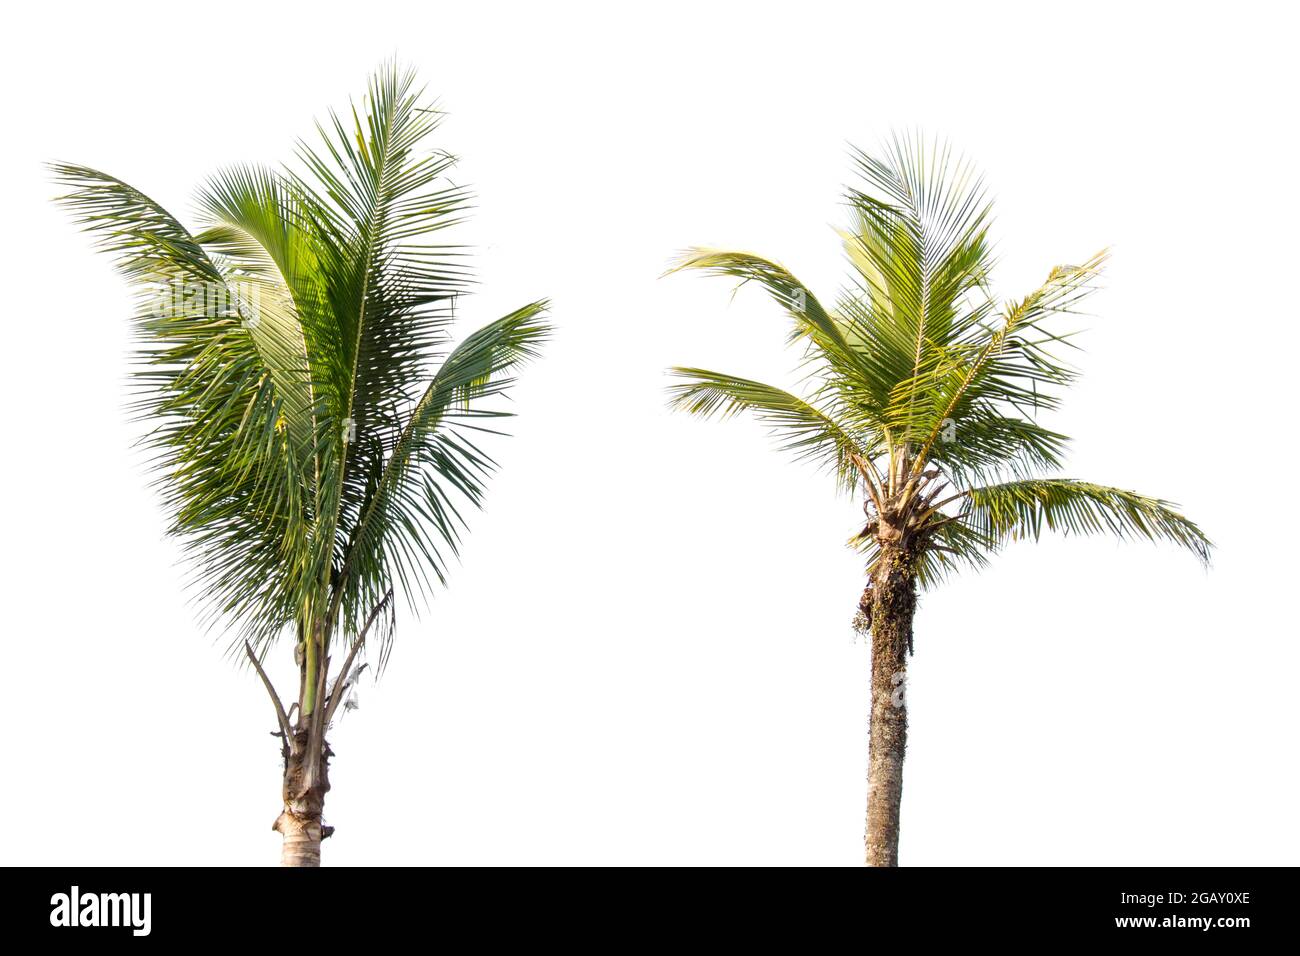 Cocotiers et palmiers arbre isolé sur fond blanc, la collection d'arbres.les grands arbres poussent en été Banque D'Images